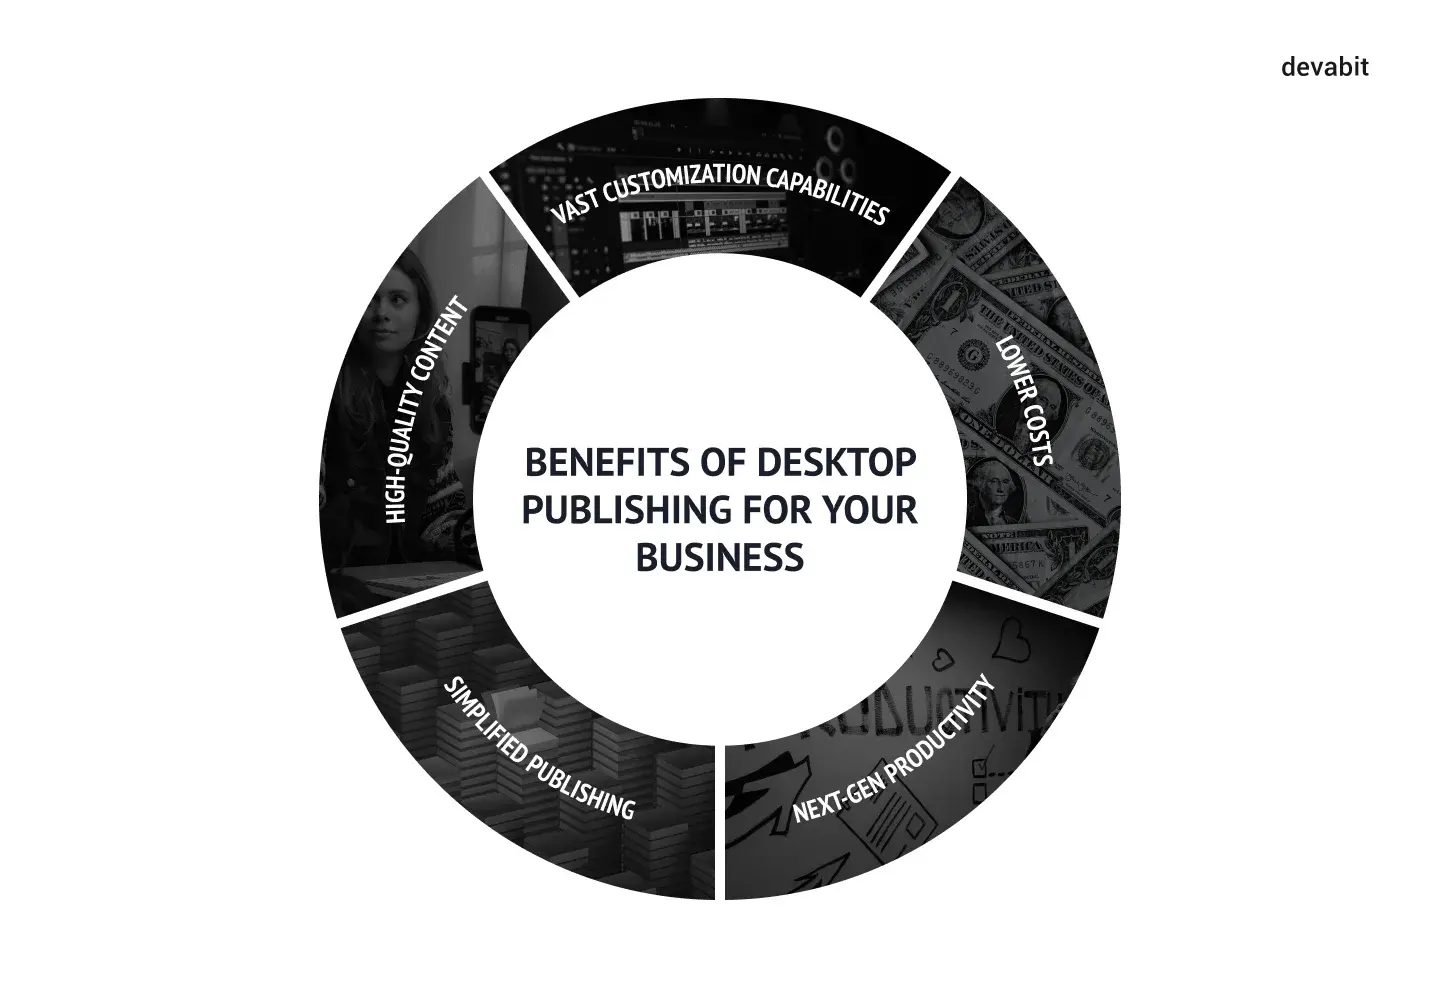 5 uses of desktop publishing: benefits identified by devabit